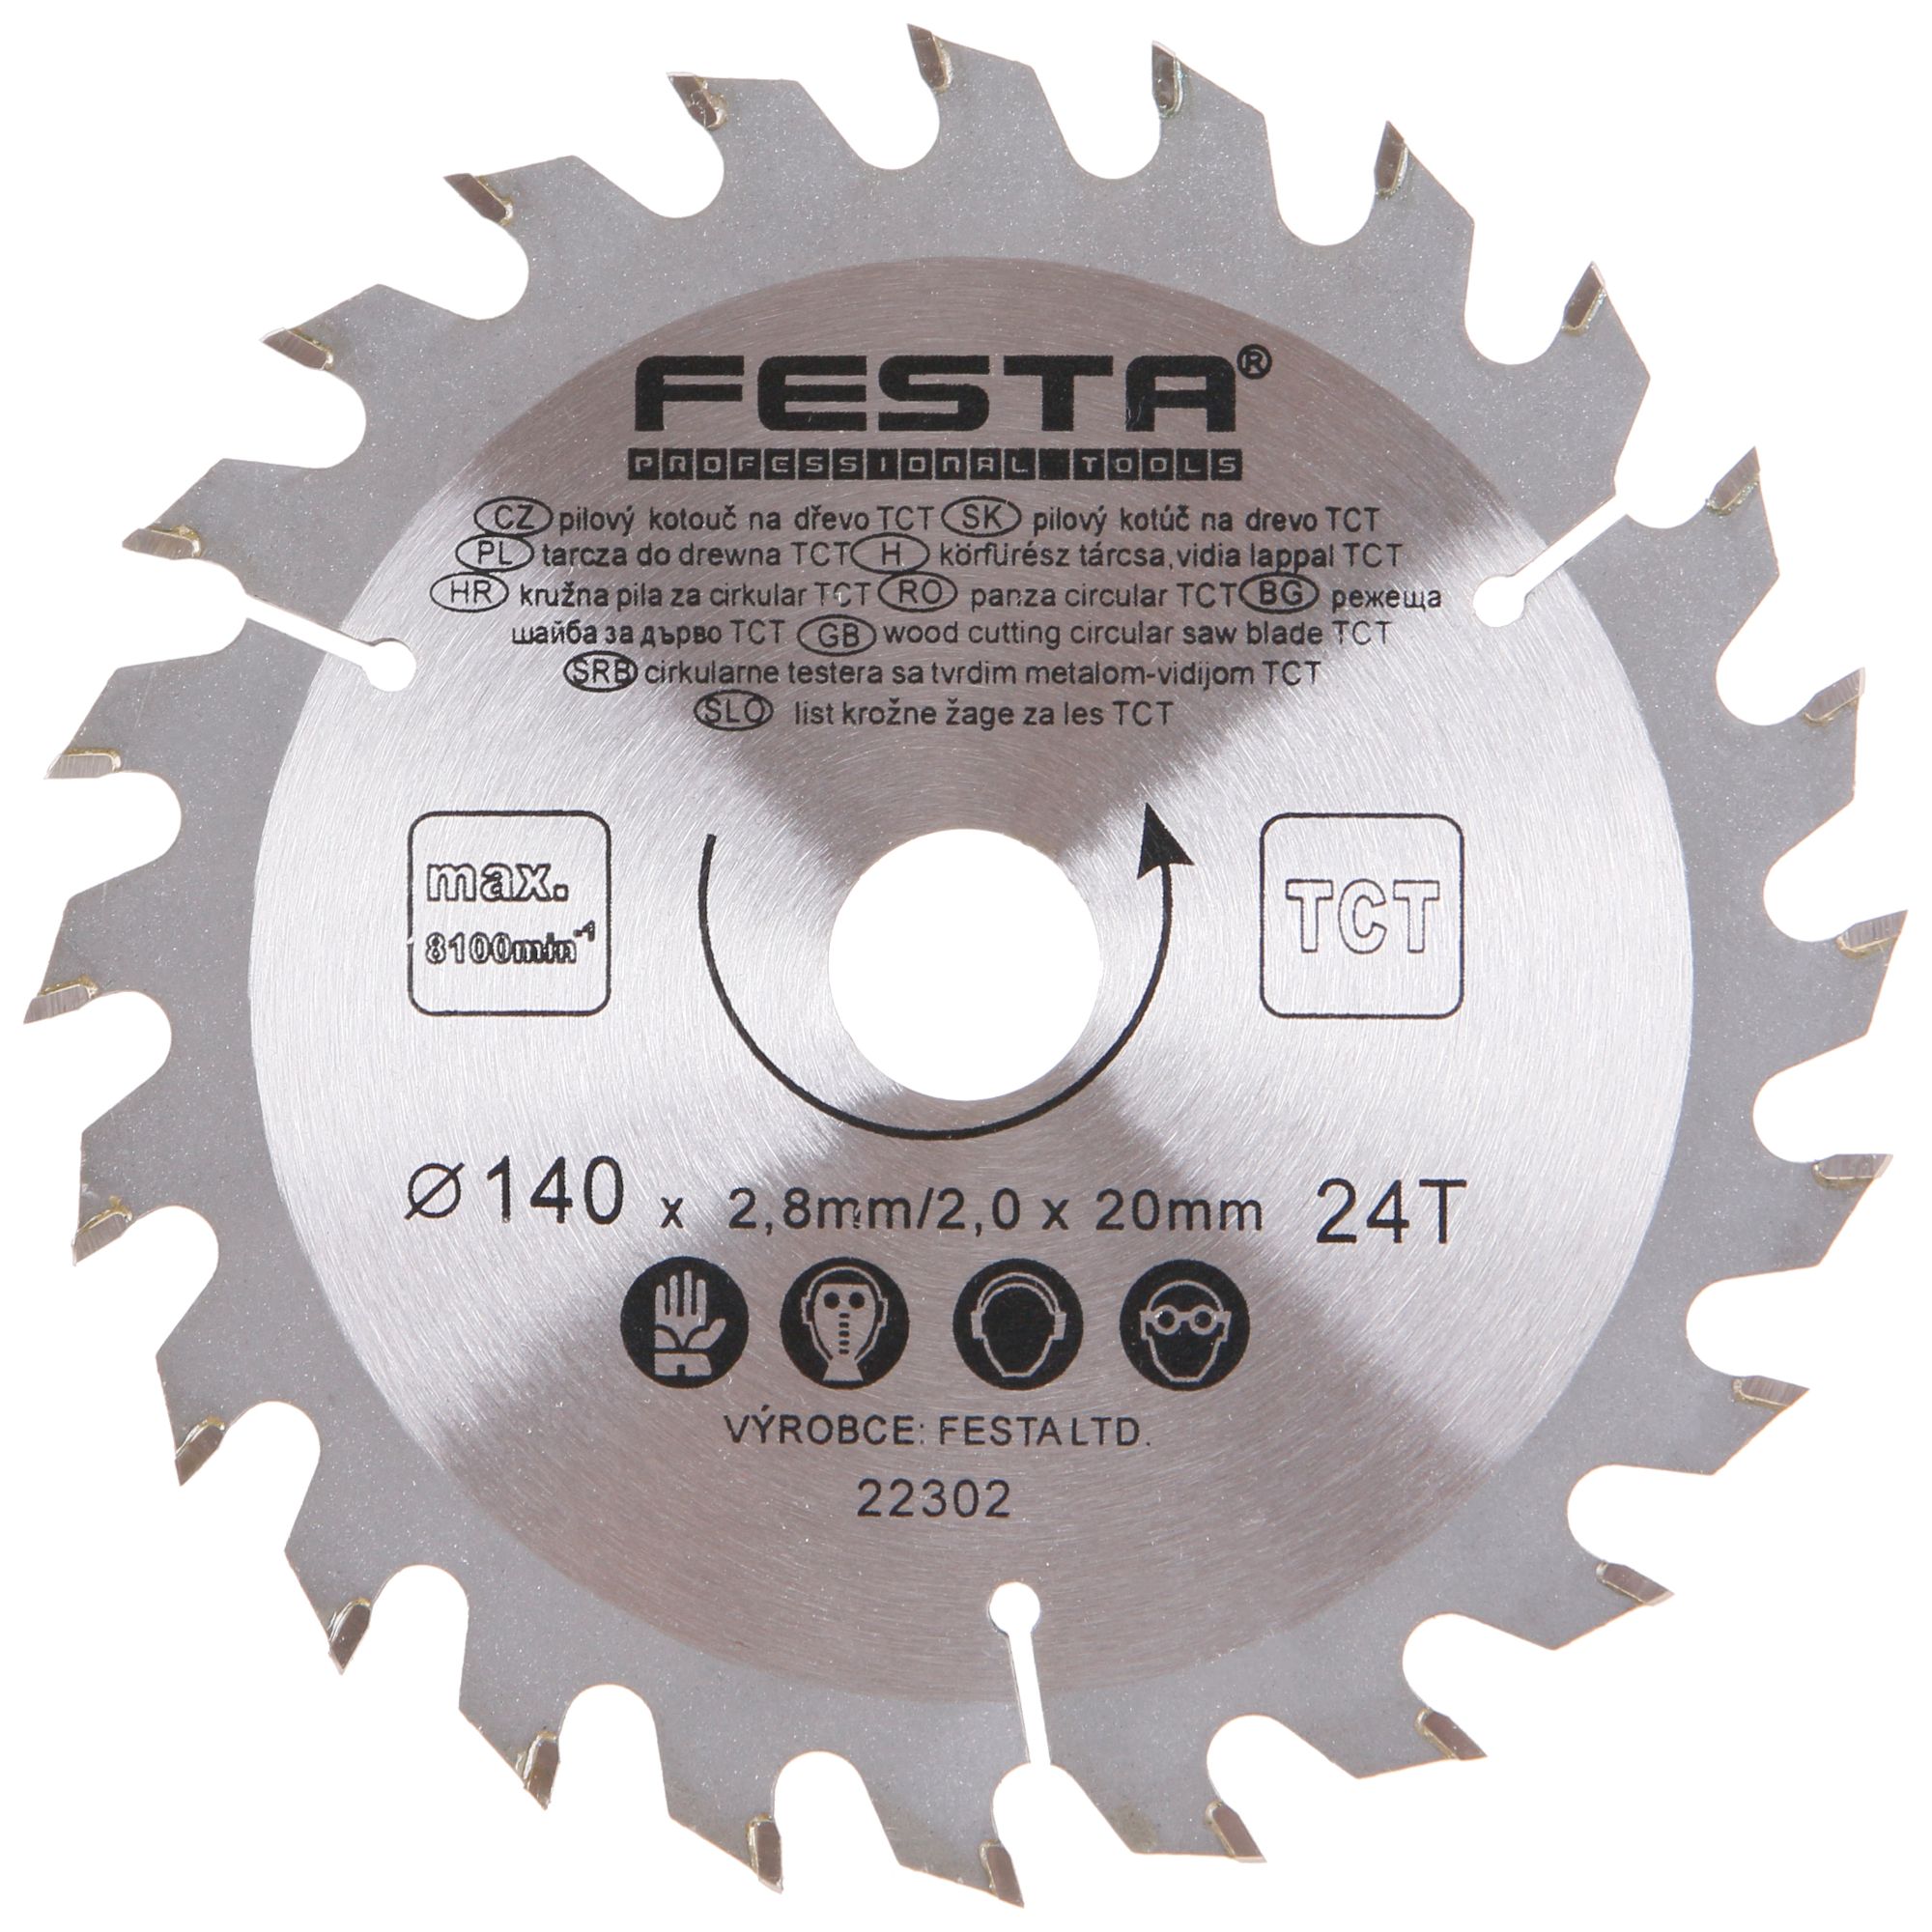 FESTA 22302 Kotouč pilový, na dřevo, 140mm, 24 zubů, 20/16mm, 2,8mm, TCT